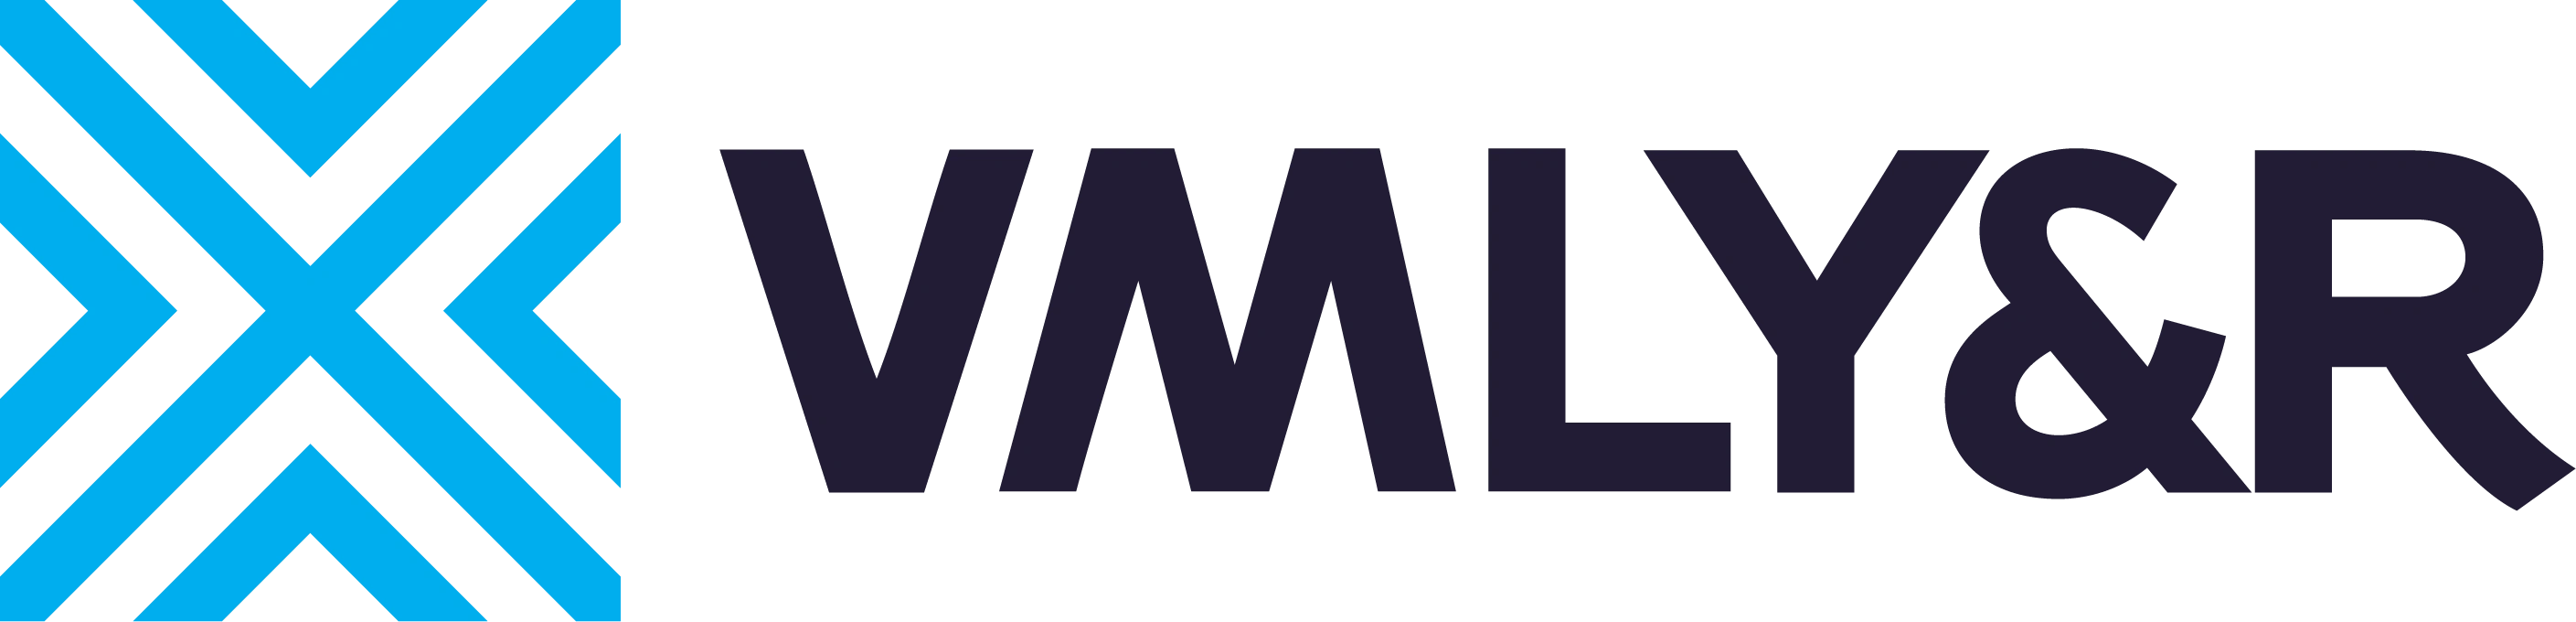 VMLY&R_logo